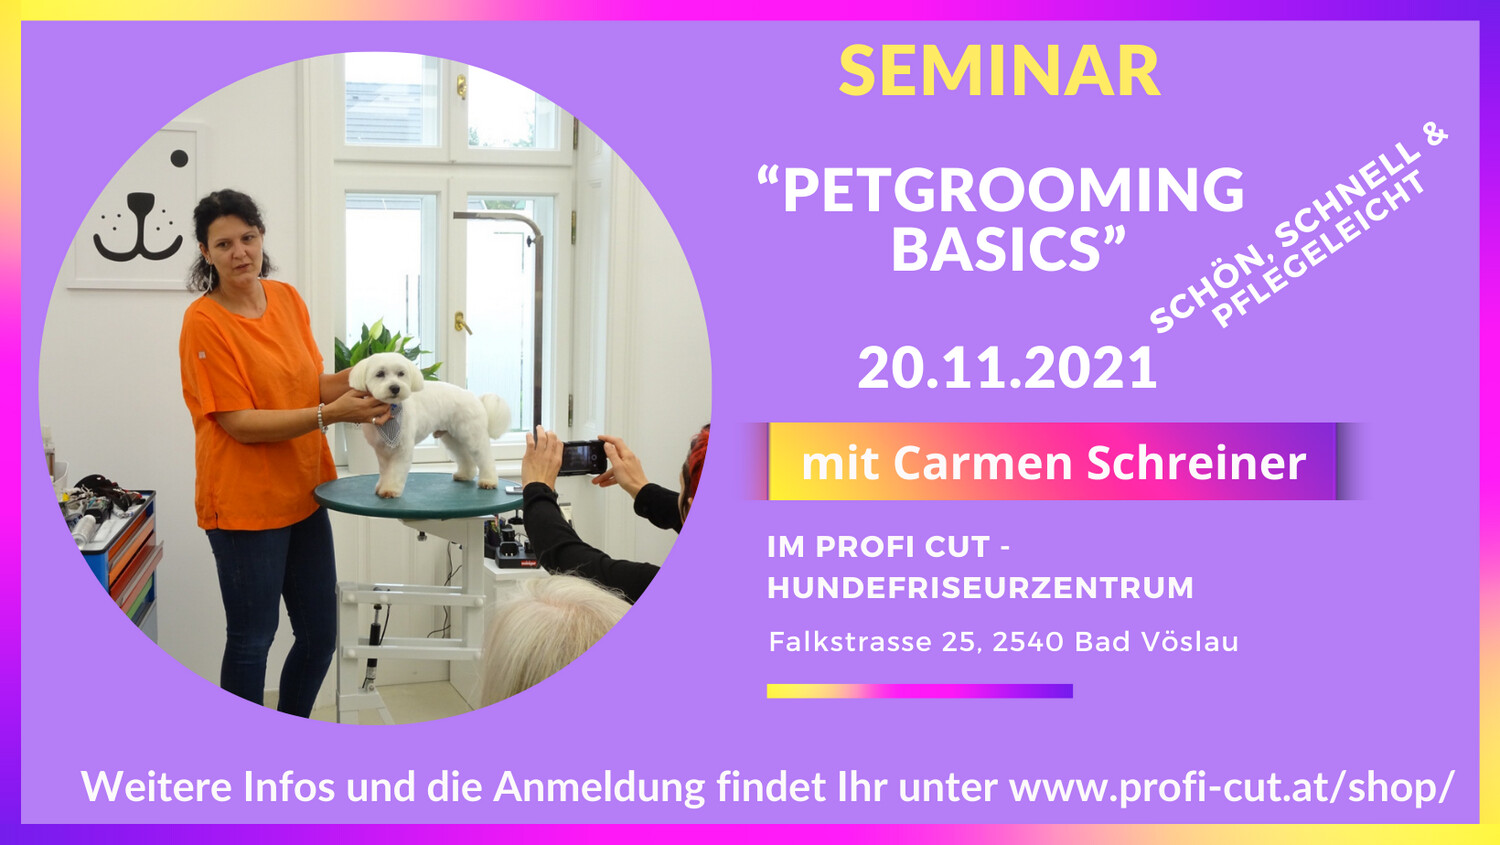 Seminar 20.11.2021 "Petgrooming - Basics" mit Carmen Schreiner